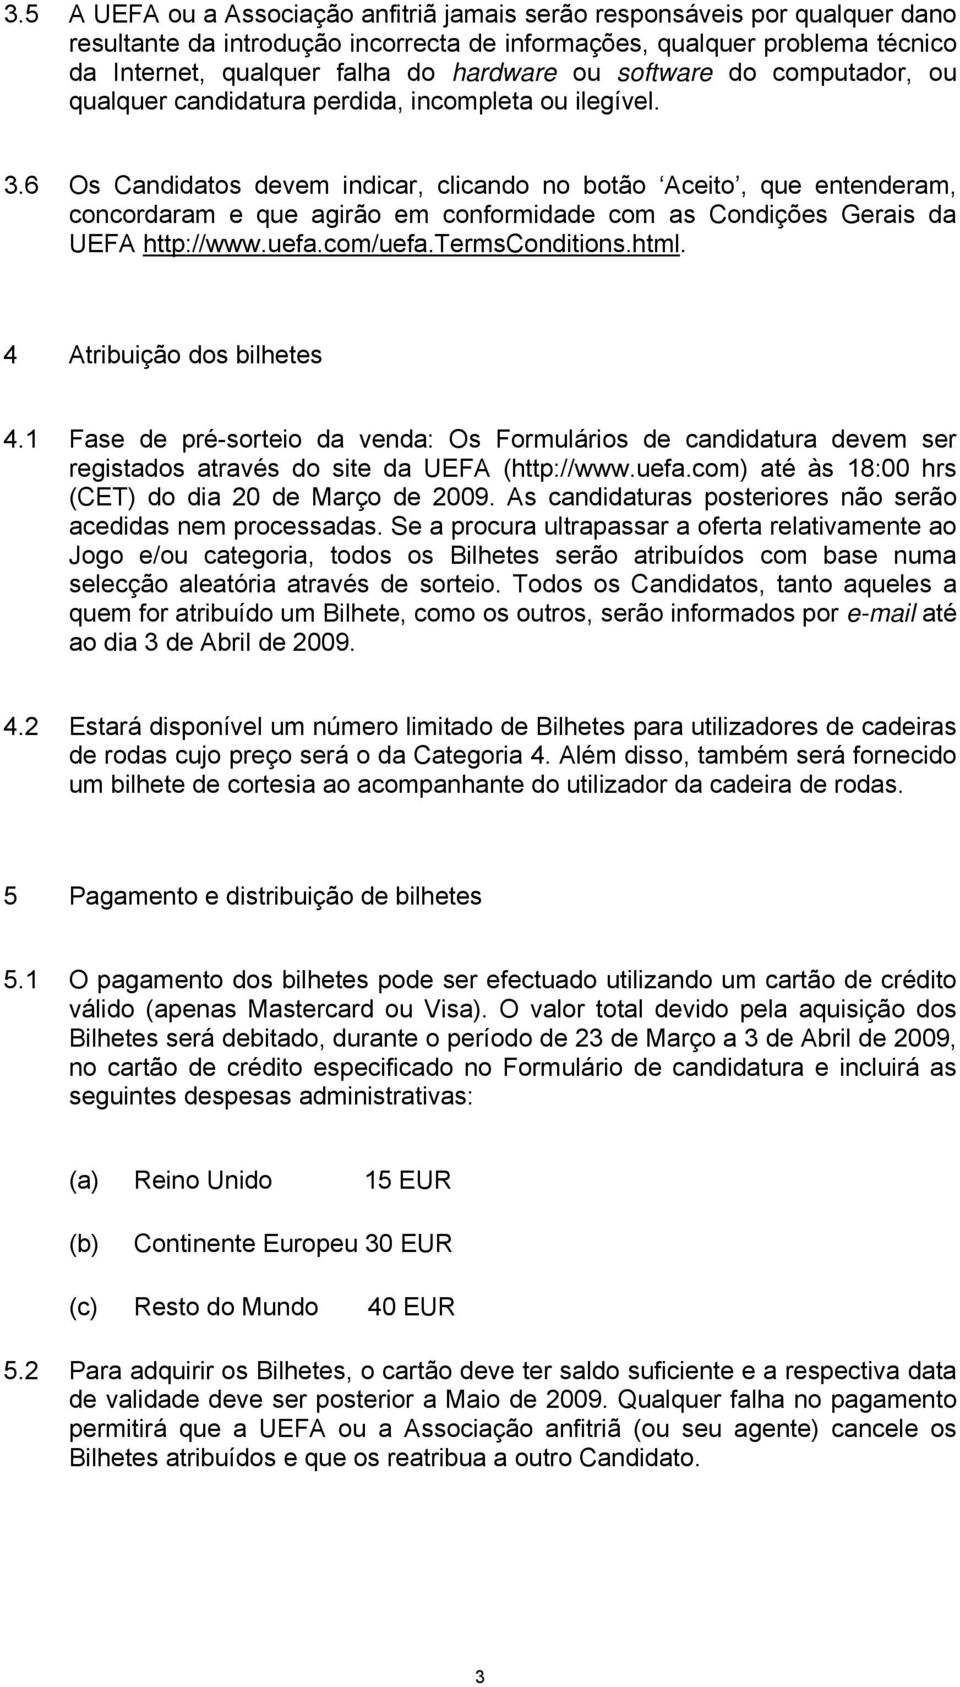 6 Os Candidatos devem indicar, clicando no botão Aceito, que entenderam, concordaram e que agirão em conformidade com as Condições Gerais da UEFA http://www.uefa.com/uefa.termsconditions.html.